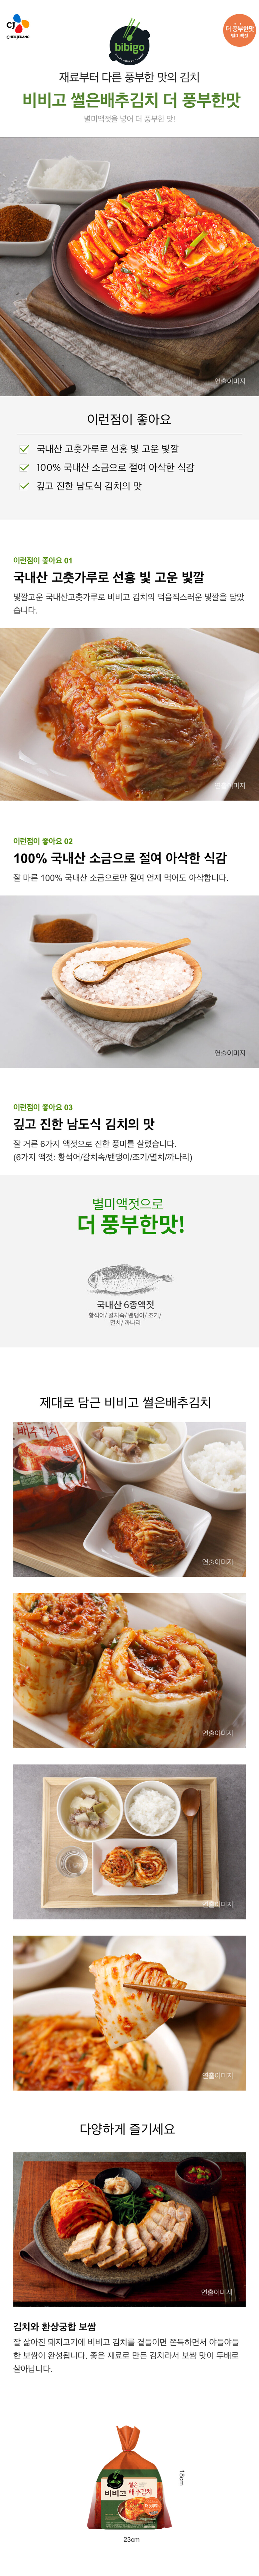 비비고-썰은배추김치-더풍부한맛-900g-1000140145363